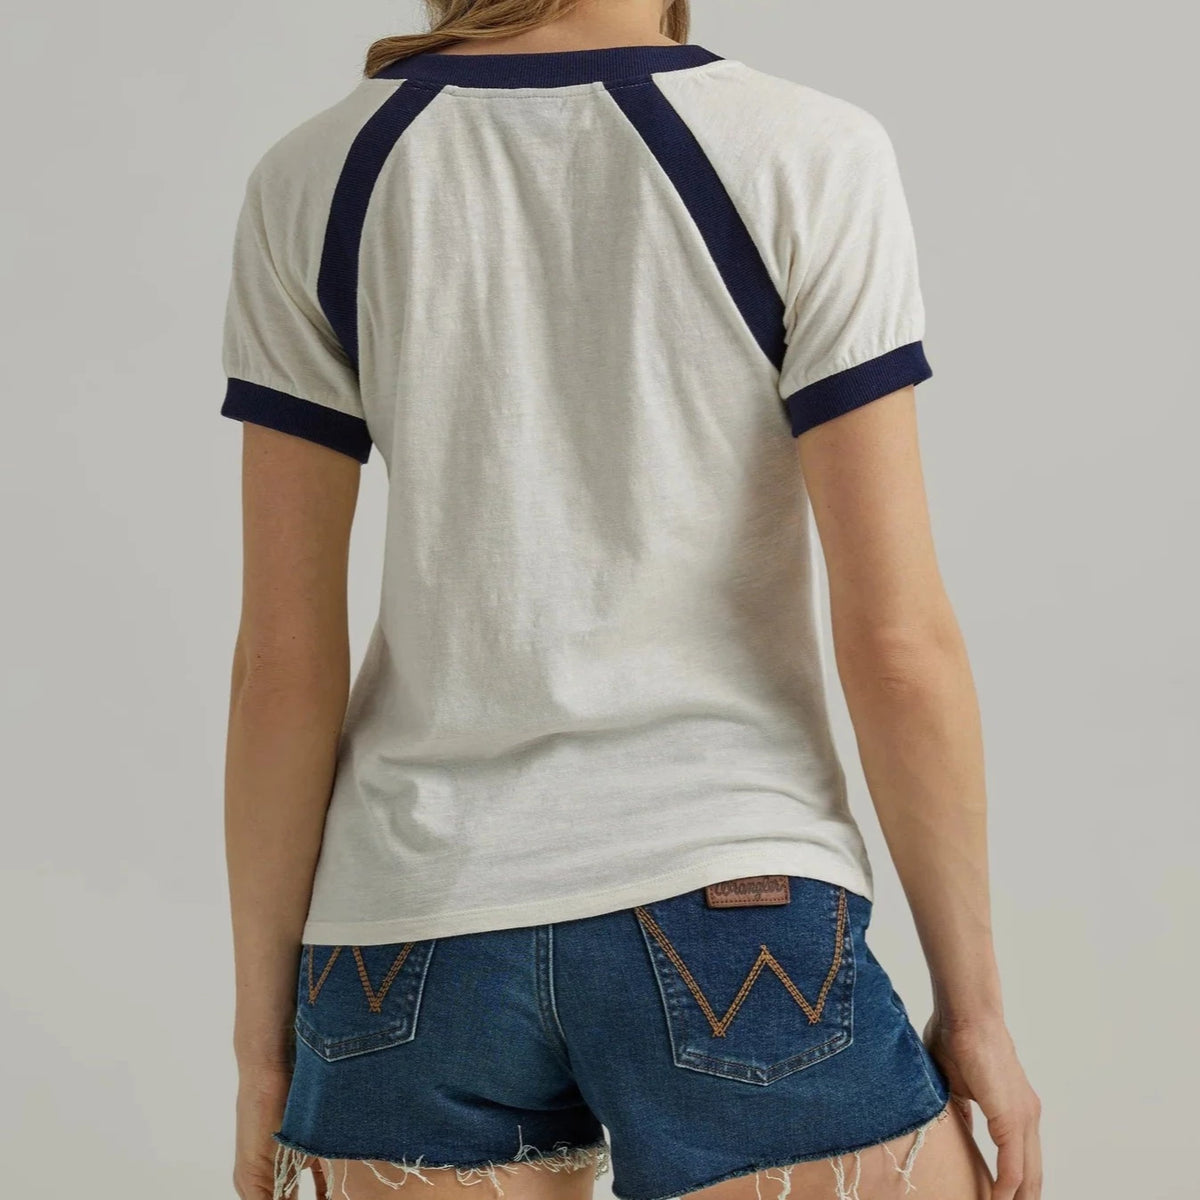 Wrangler Retro Women's Western Vintage Ringer T-Shirt in Cream & Navy